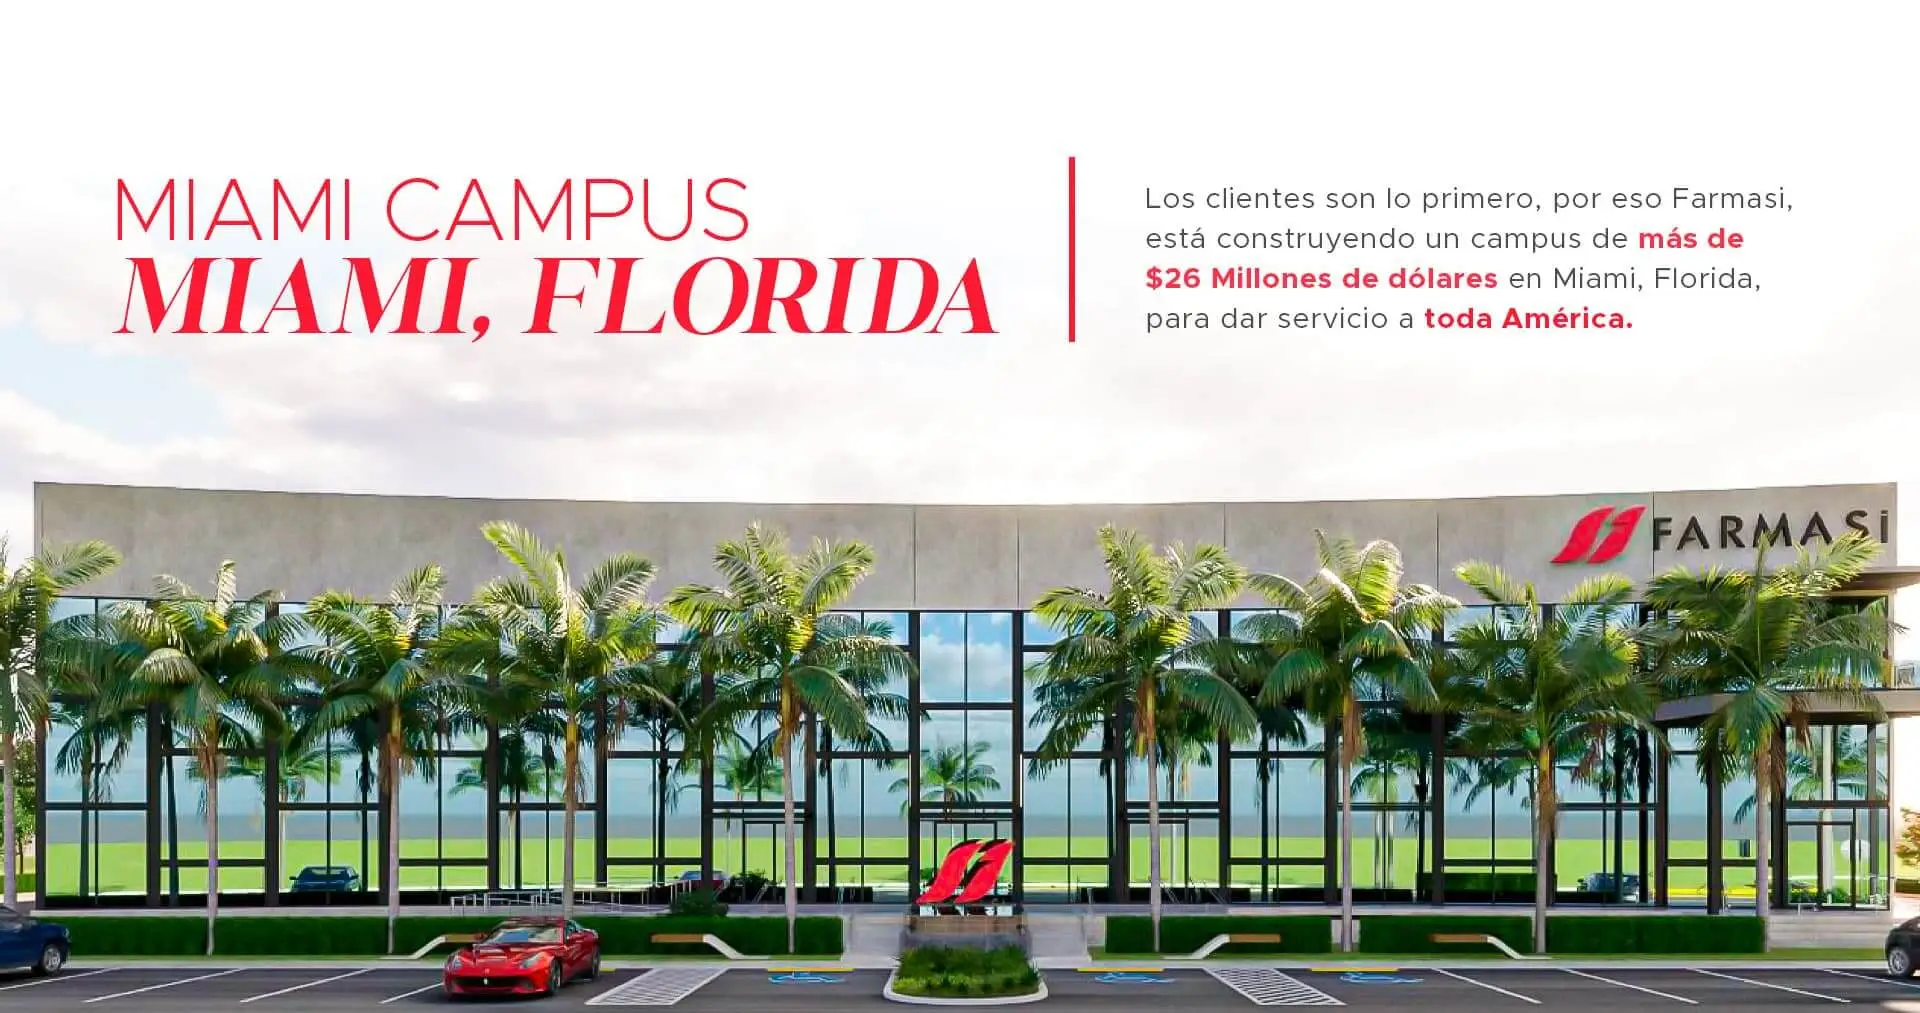 FarmaSi - Campus Miami